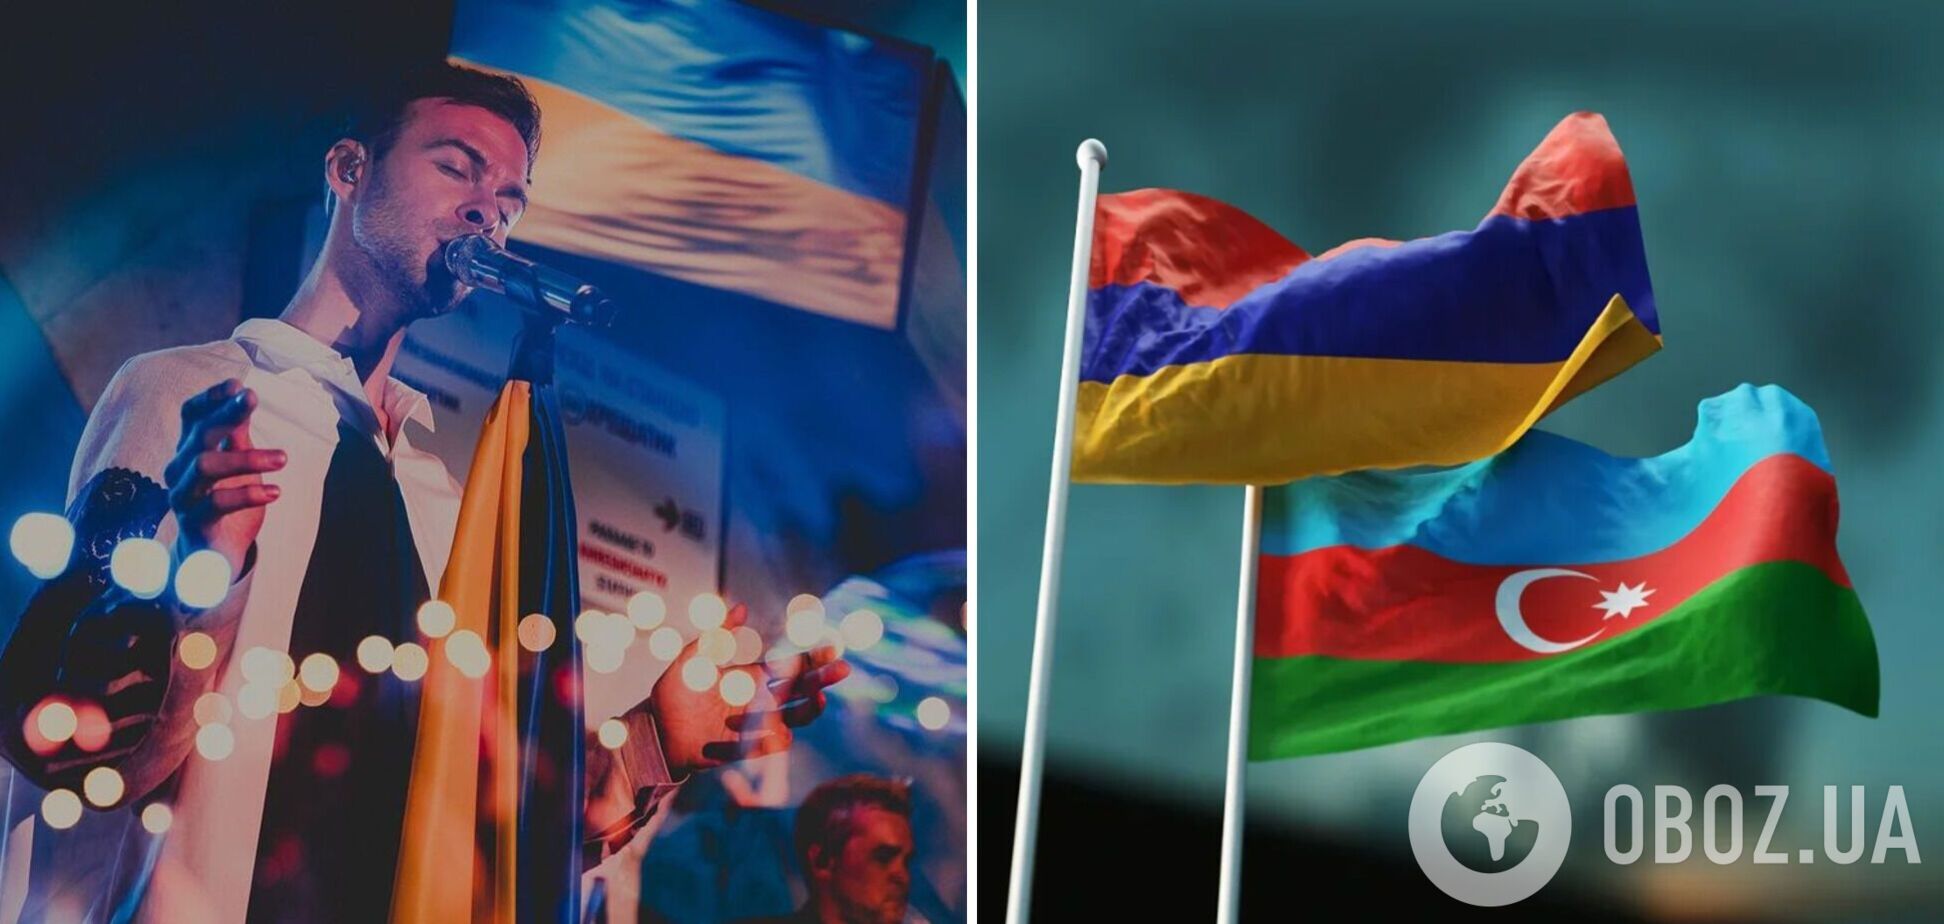 Макс Барских отменил концерт в Азербайджане из-за агрессии по отношению к Армении